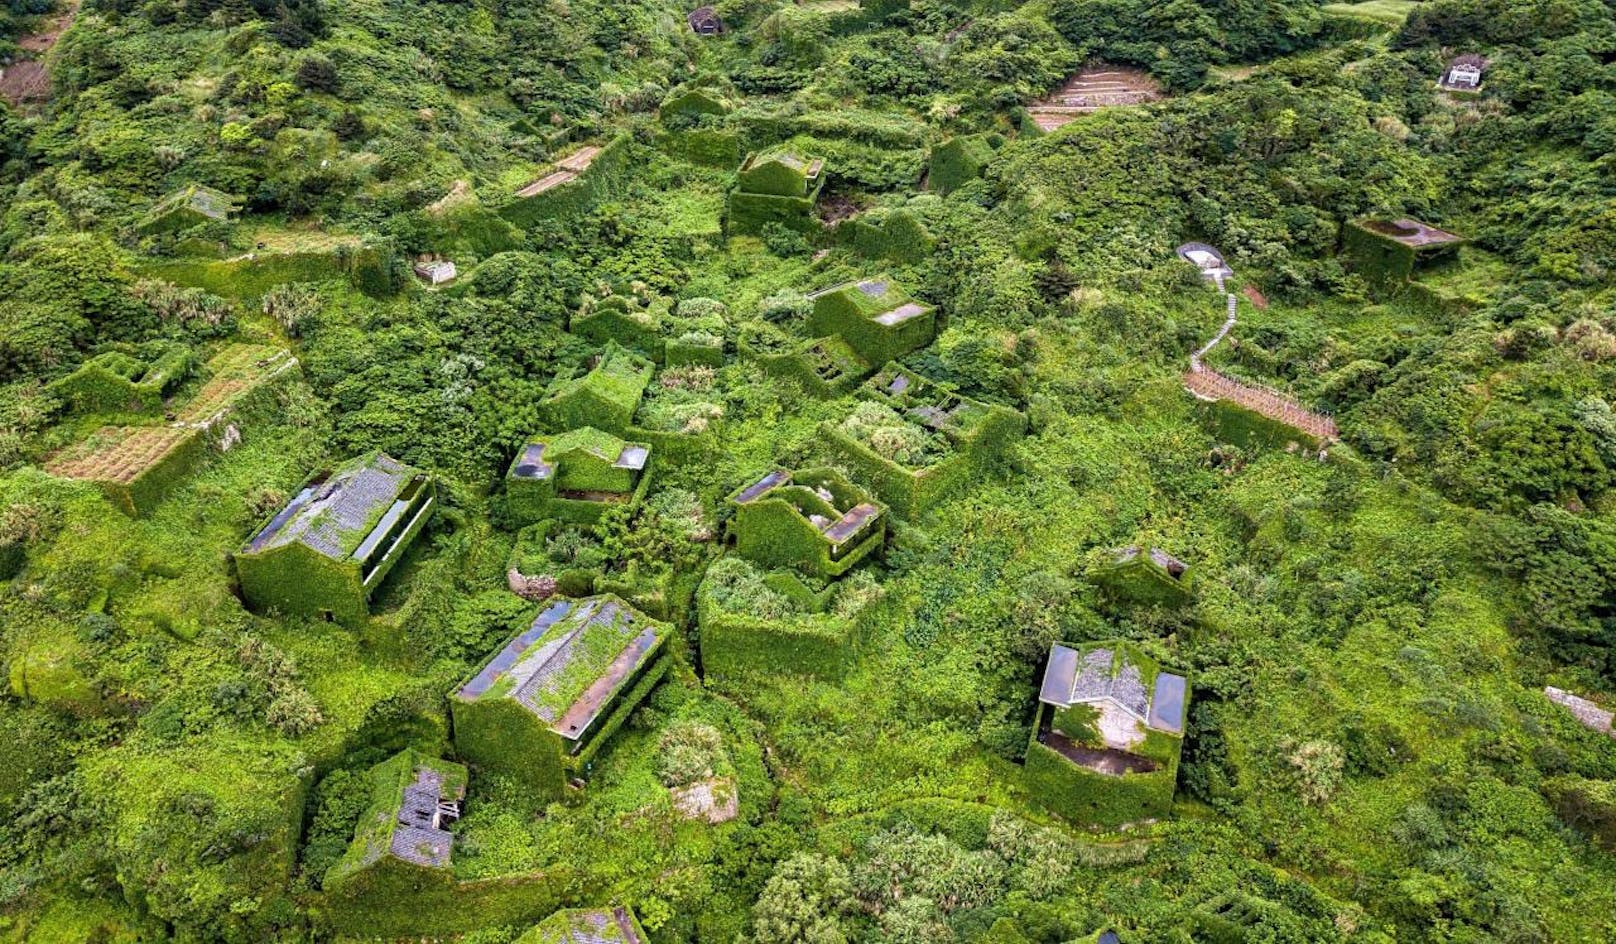 Das Geisterdorf Houtouwan auf der Insel Shengsan (China) wurde von der Natur total überwuchert.